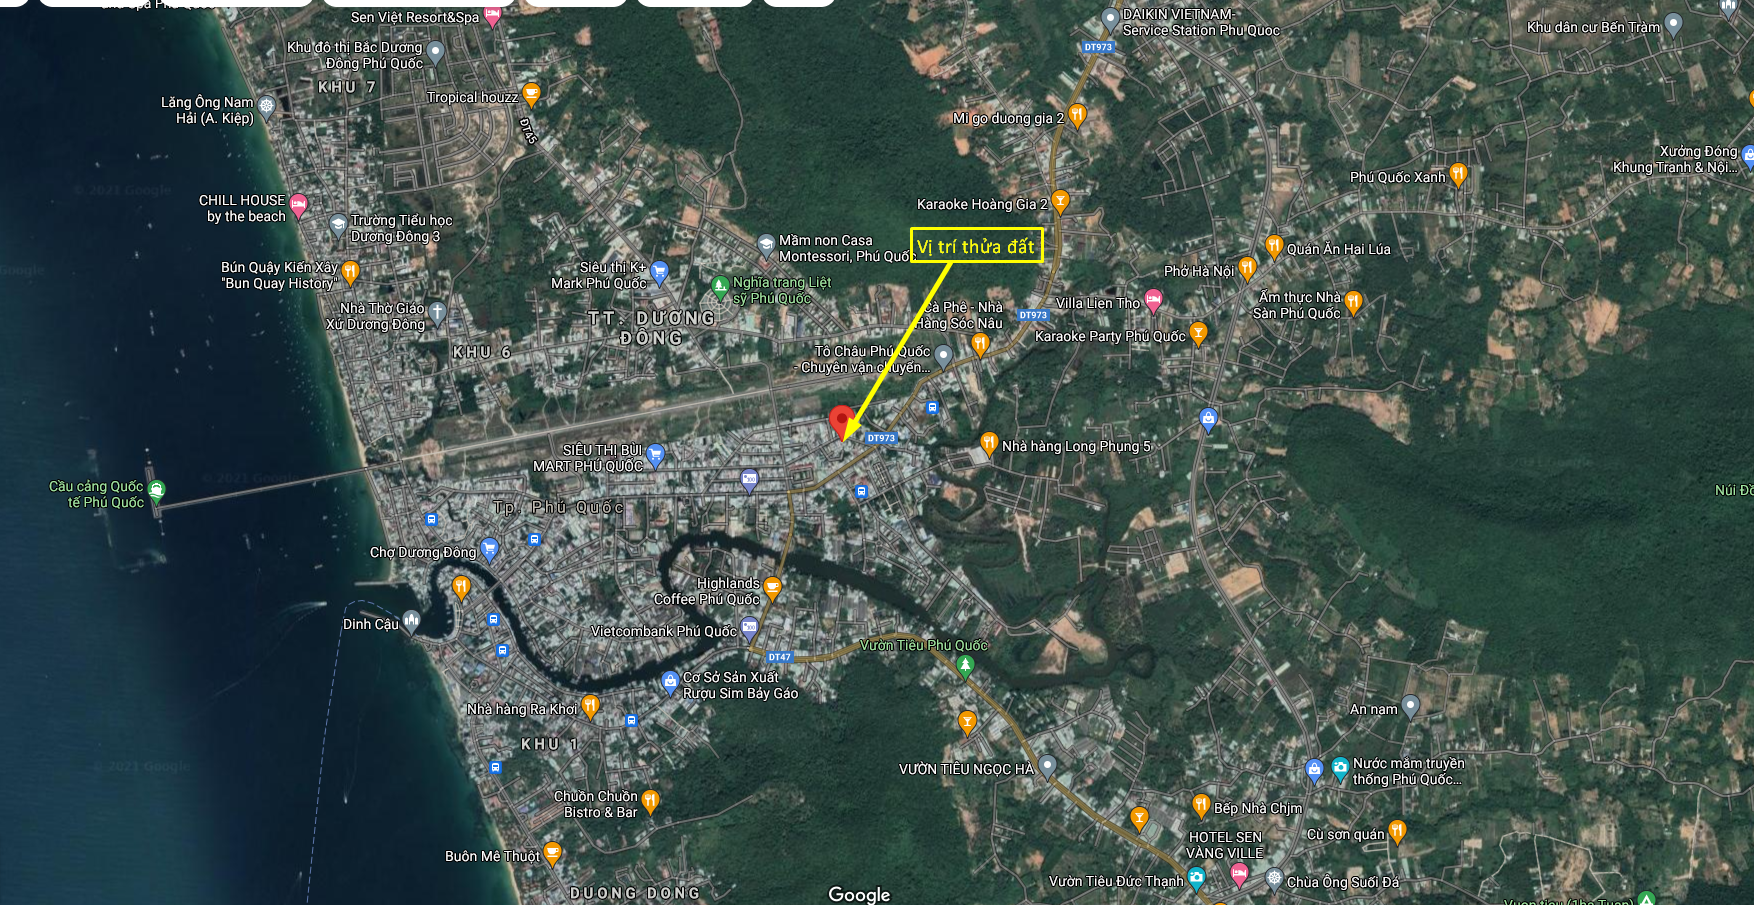 Bán mảnh đất 168.9m2 khu phố 5, Dương Đông, Phú Quốc – 11 tỷ